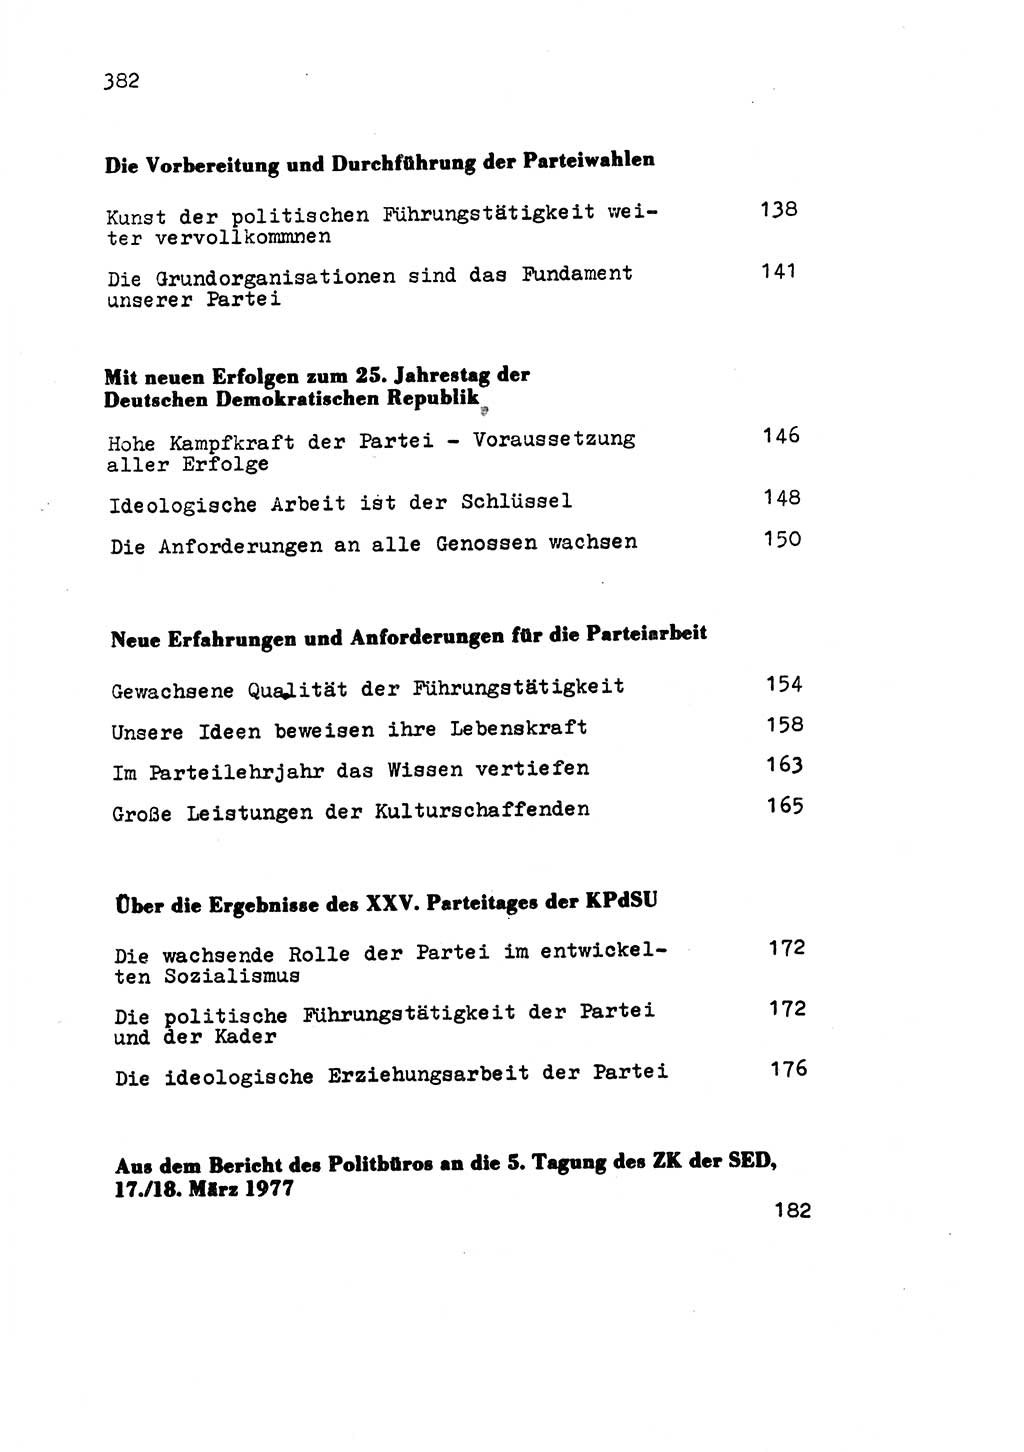 Zu Fragen der Parteiarbeit [Sozialistische Einheitspartei Deutschlands (SED) Deutsche Demokratische Republik (DDR)] 1979, Seite 382 (Fr. PA SED DDR 1979, S. 382)